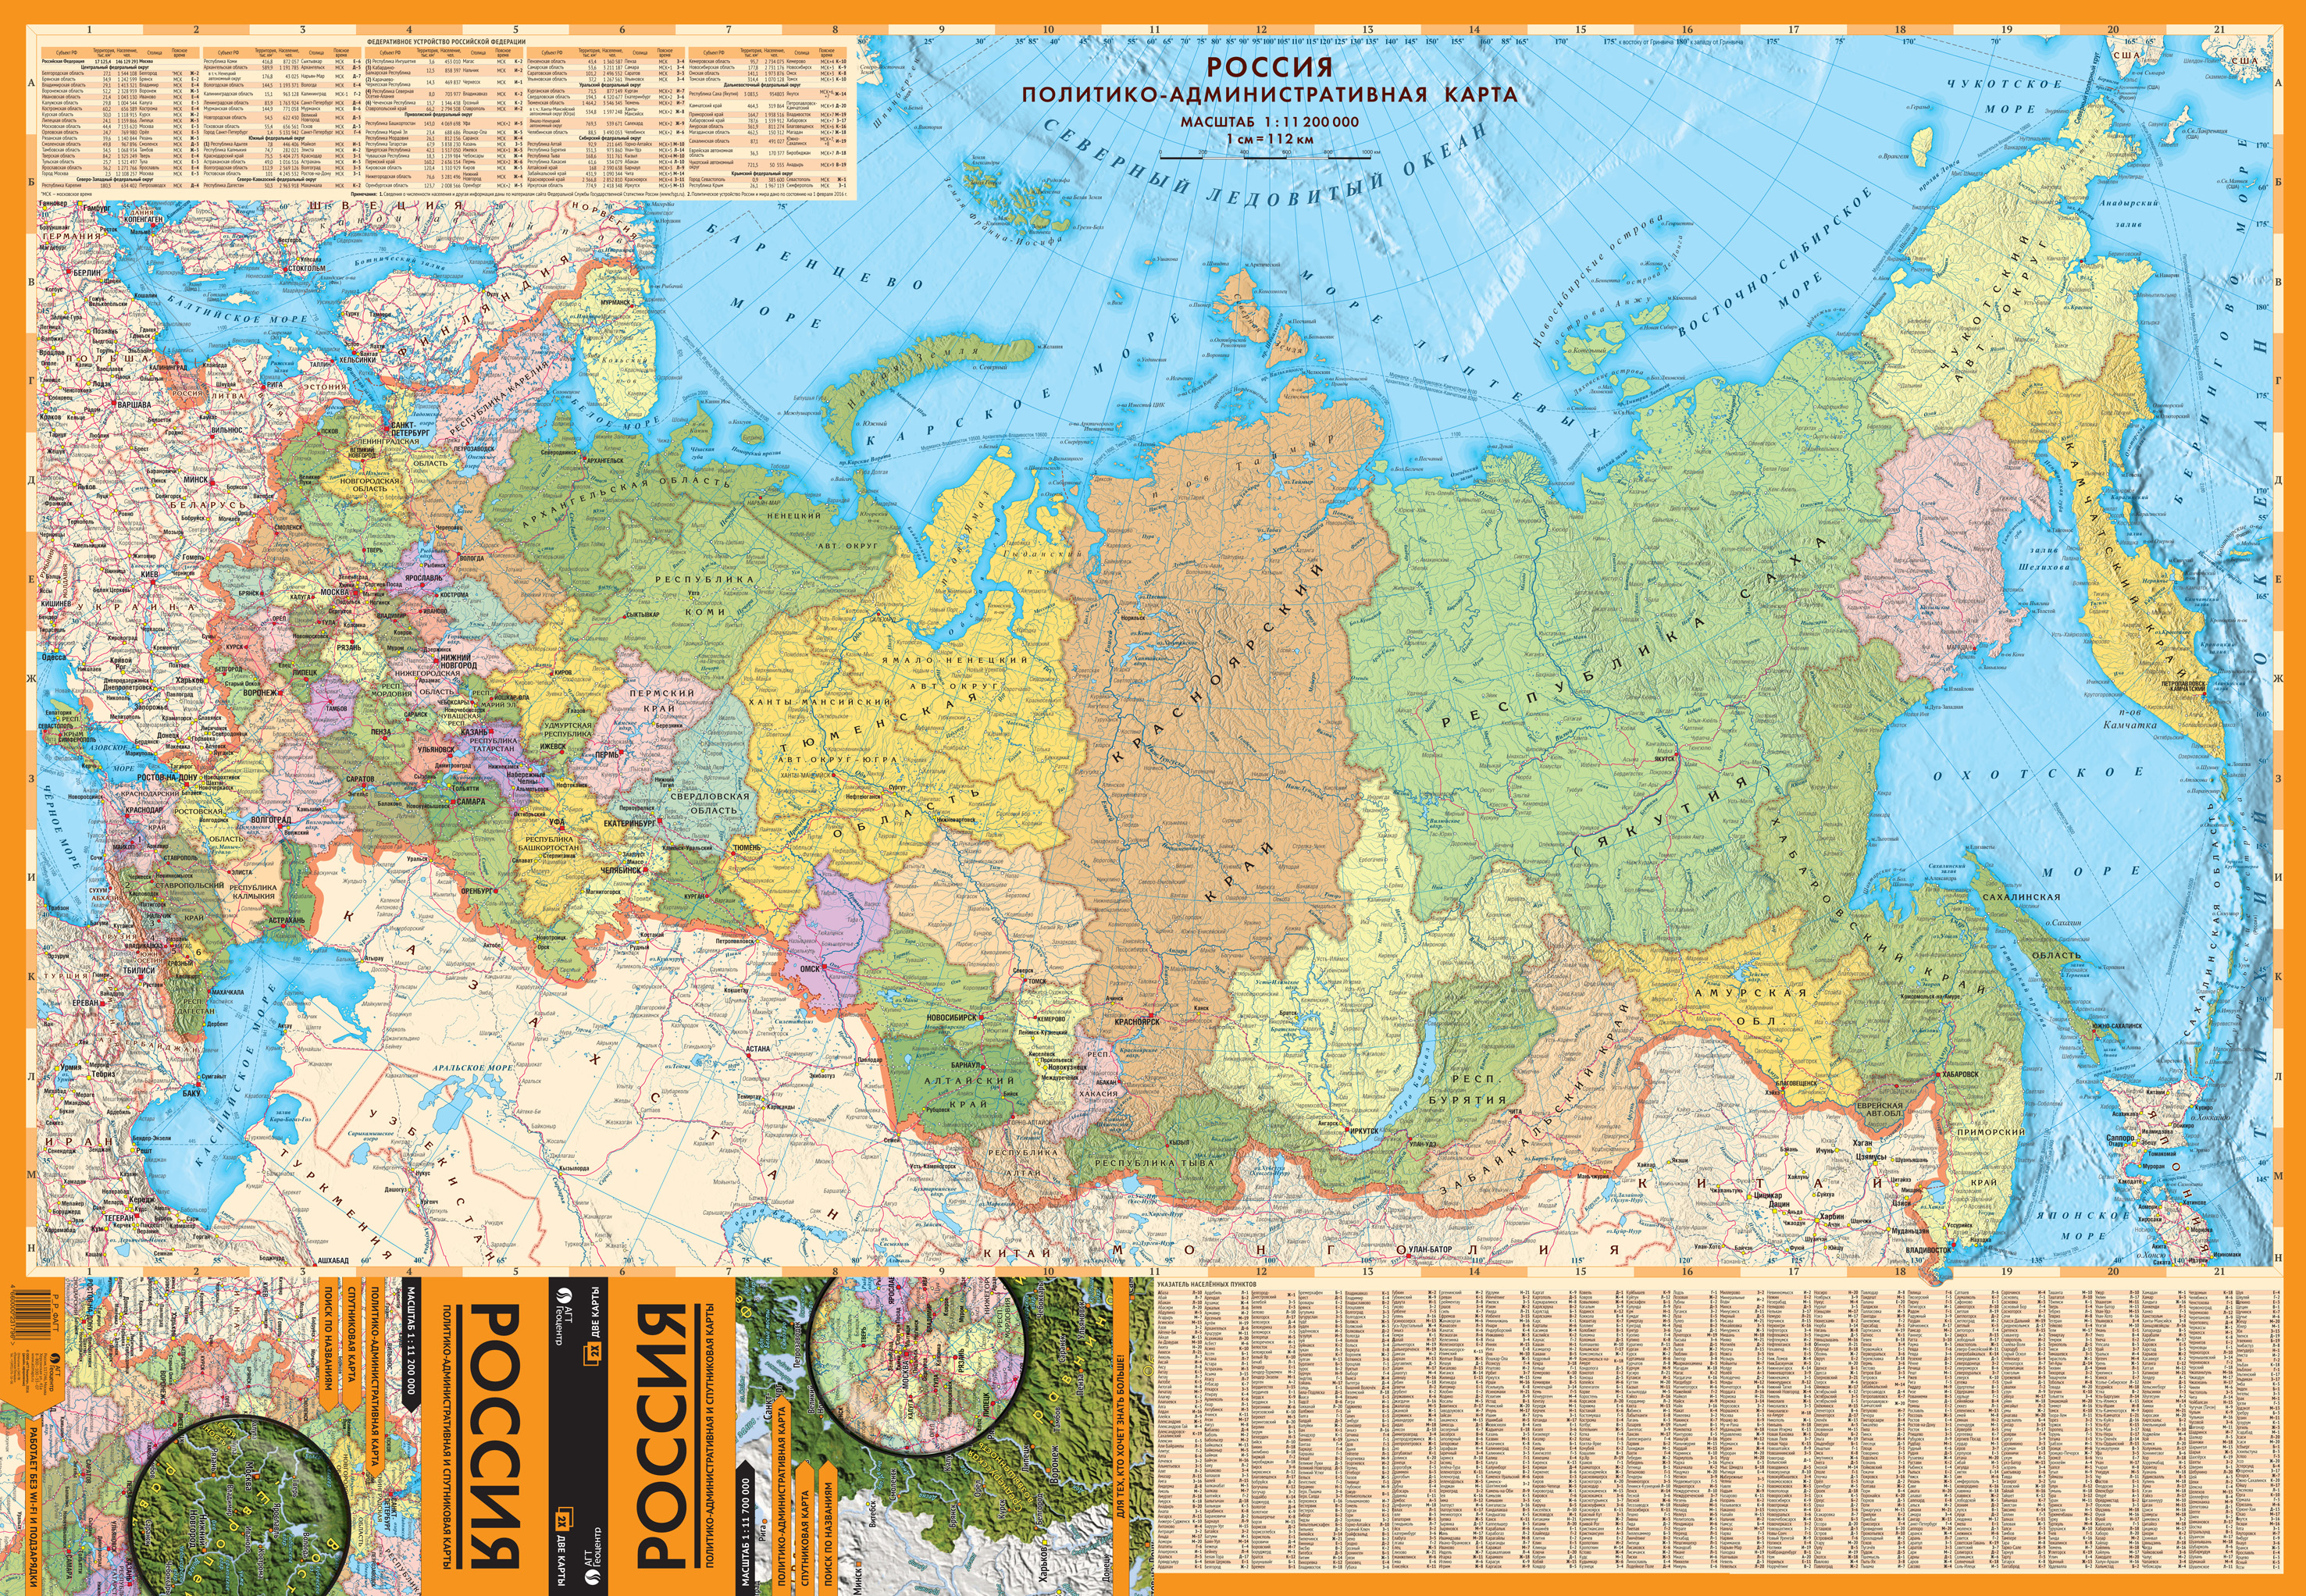 Сборка карты россии